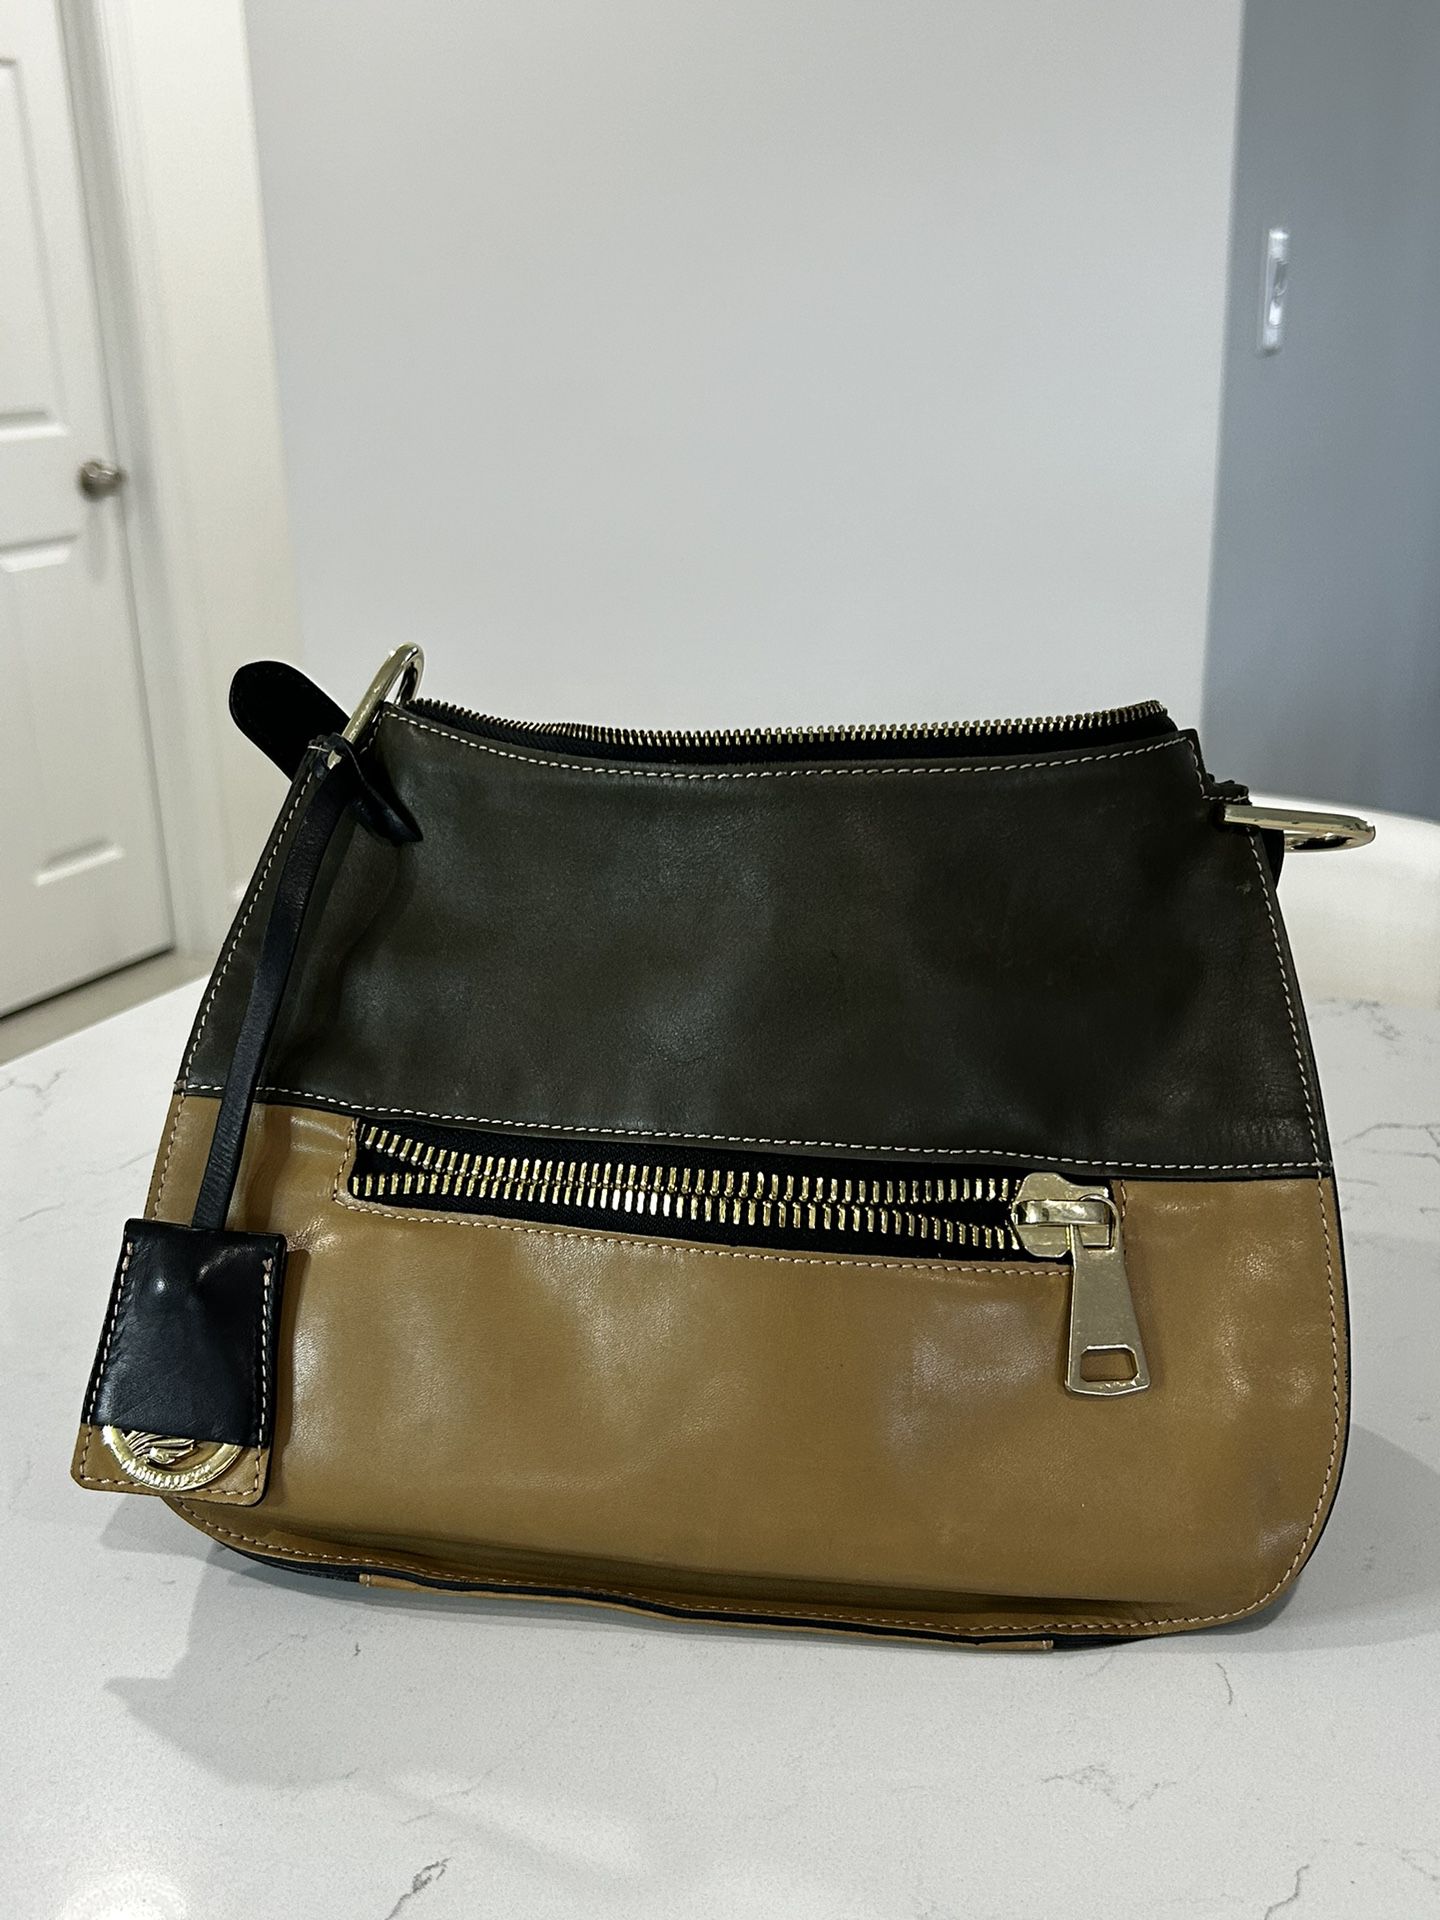 AB Asia Bellucci Genuine Leather Handbag Olive Camel Saddle Shoulder Bag 